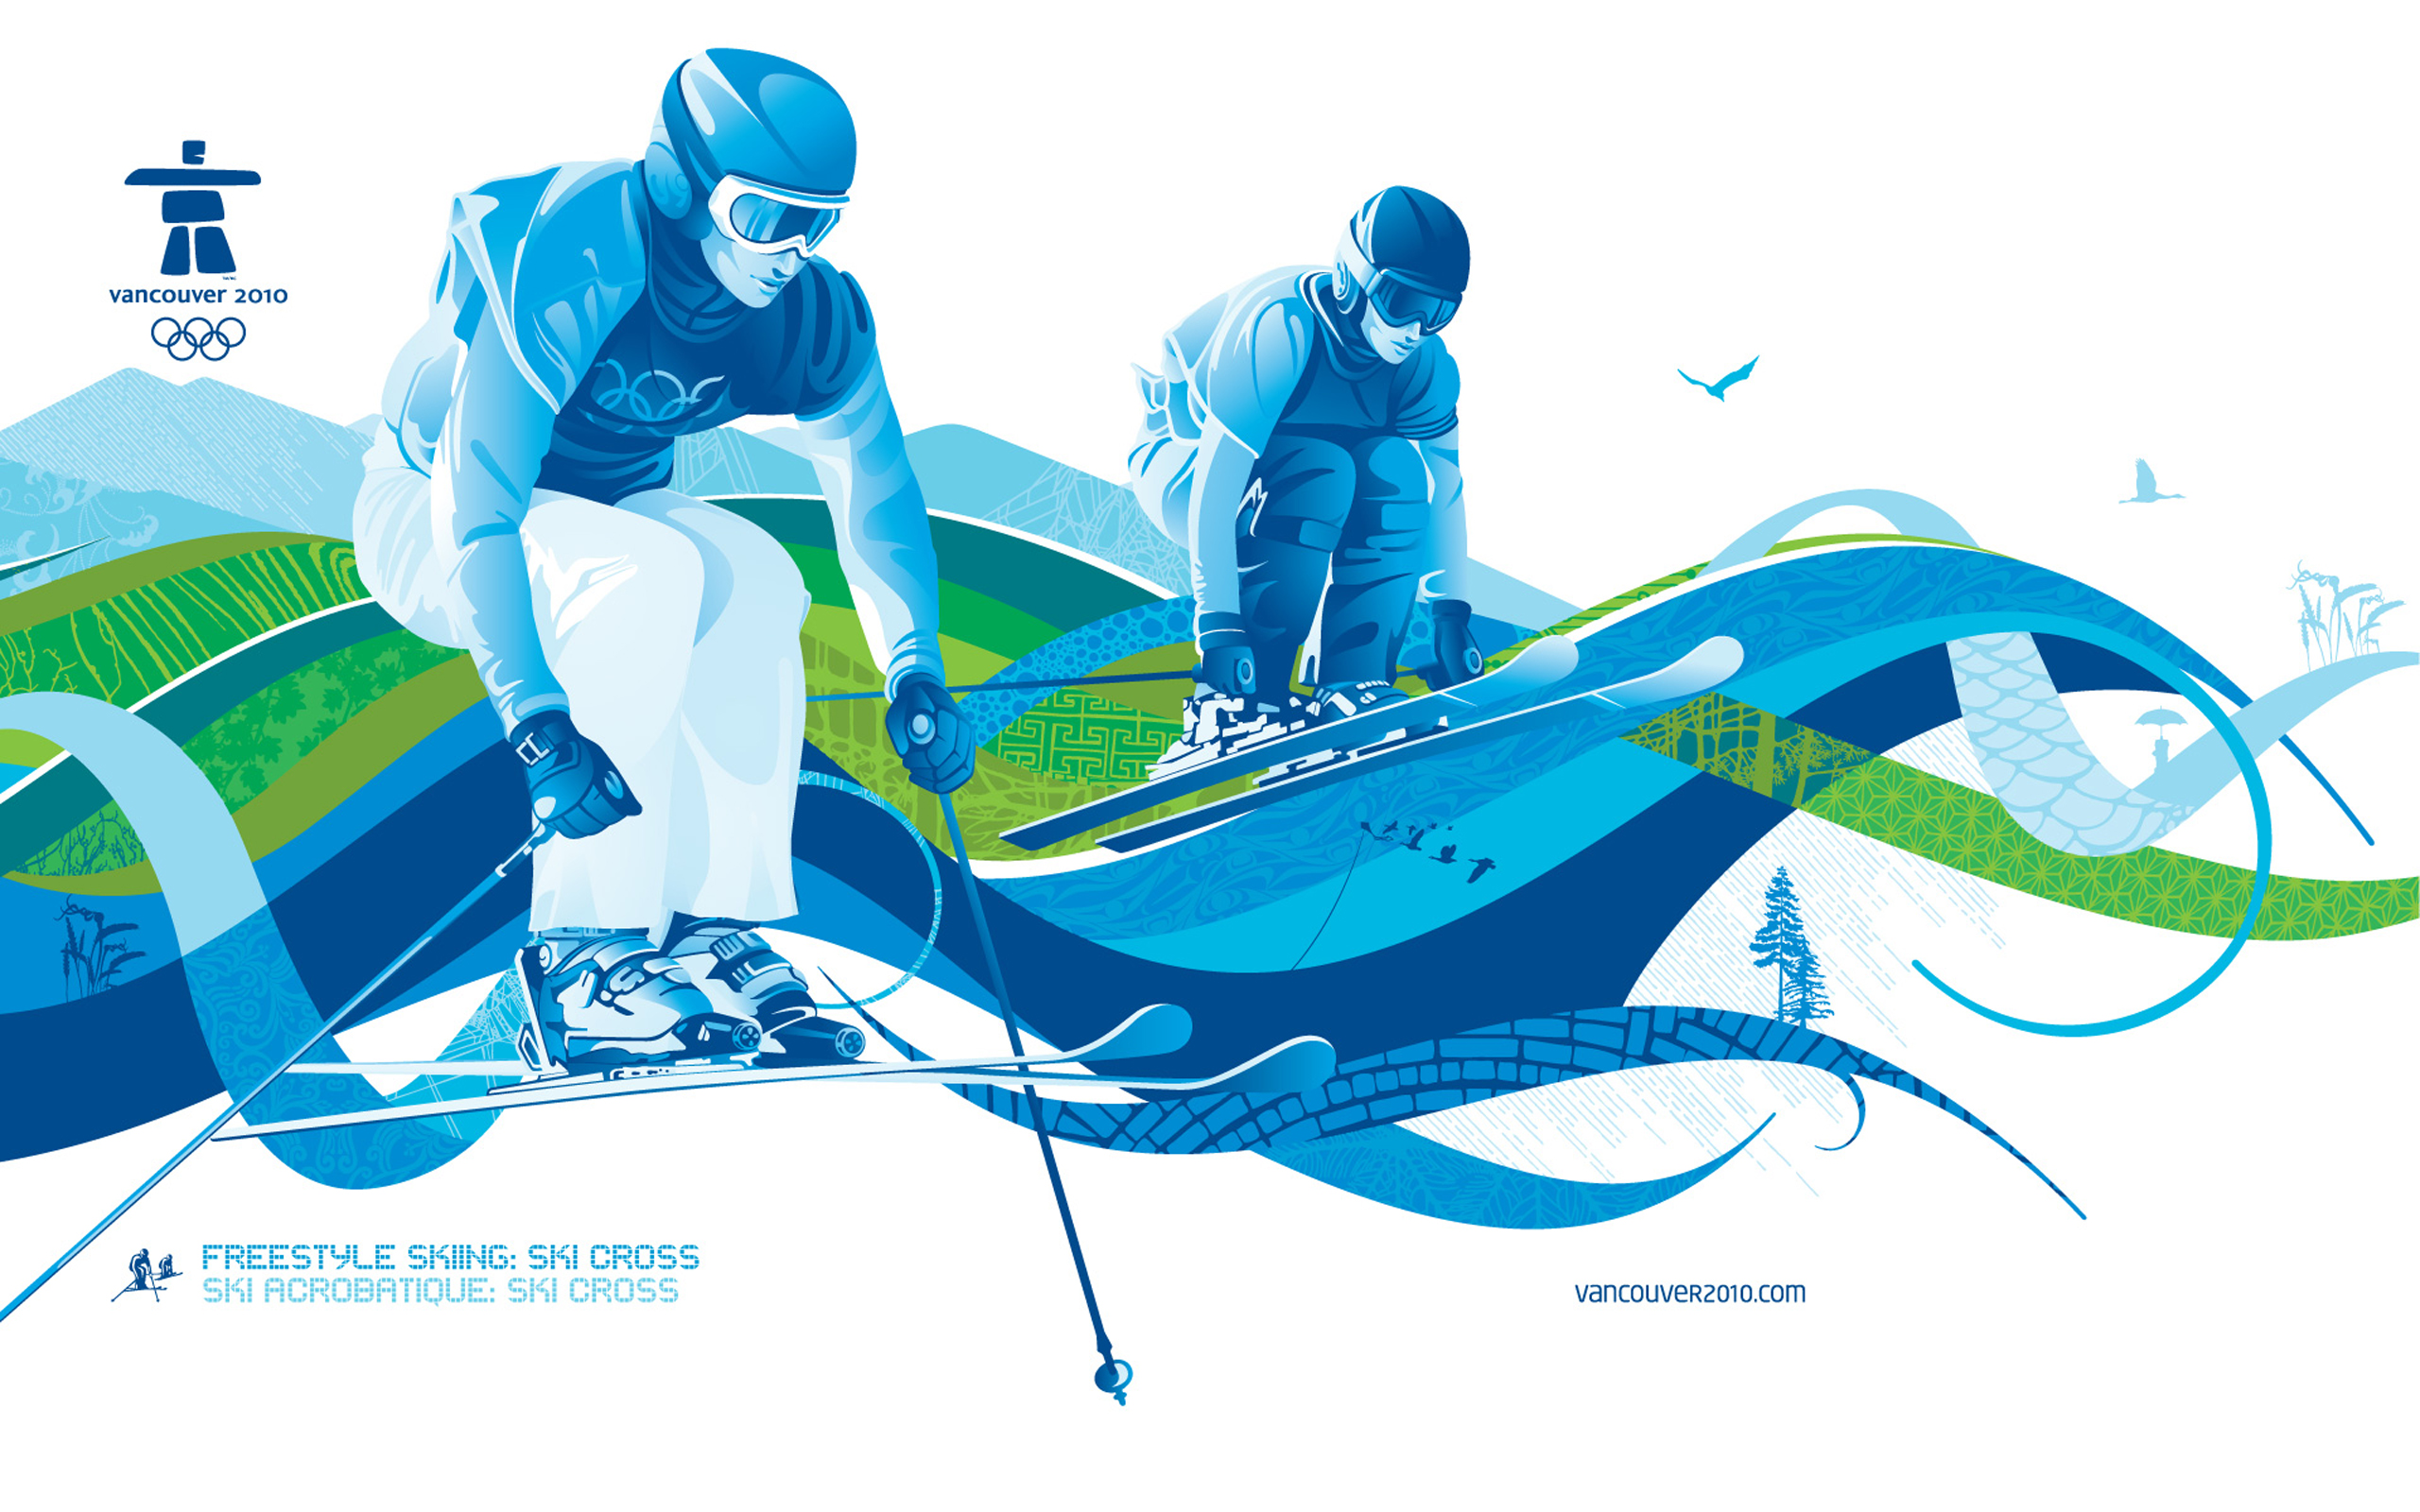 Style Skiing Ski Cross Desktop Wallpaper For